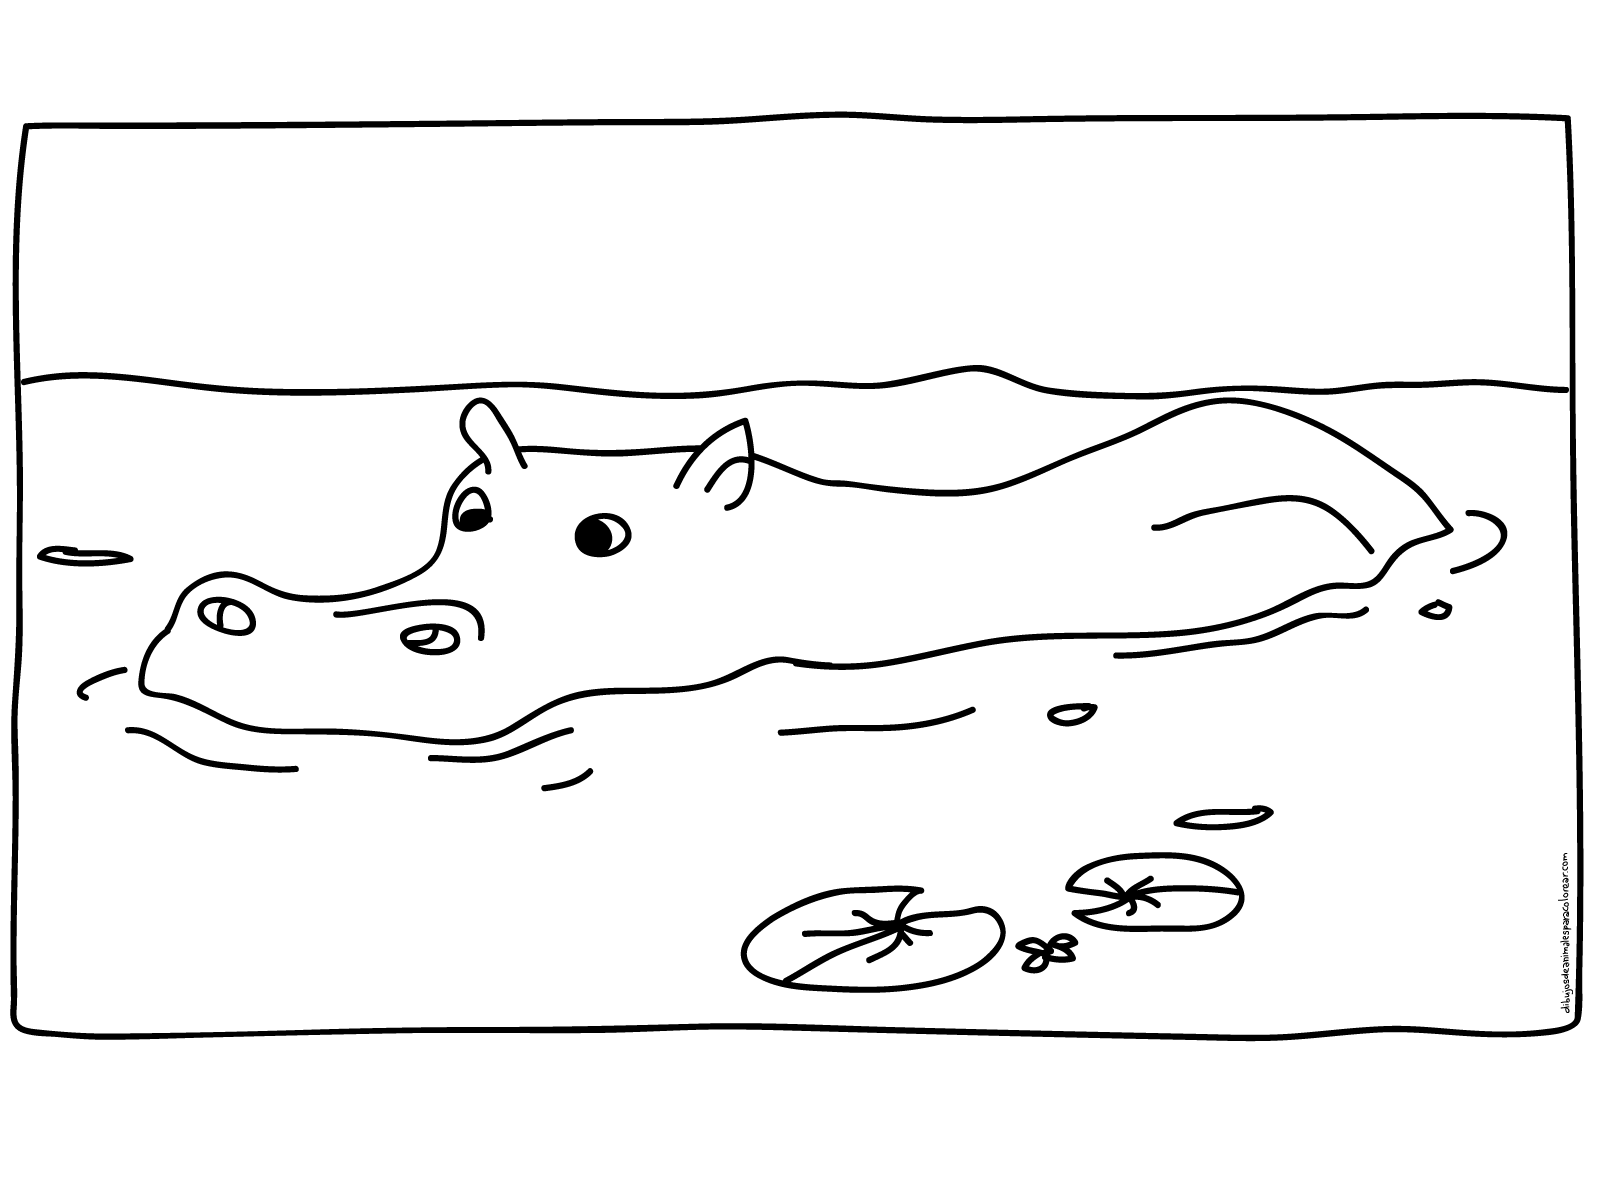 Hipopotamo tomando banho no lago